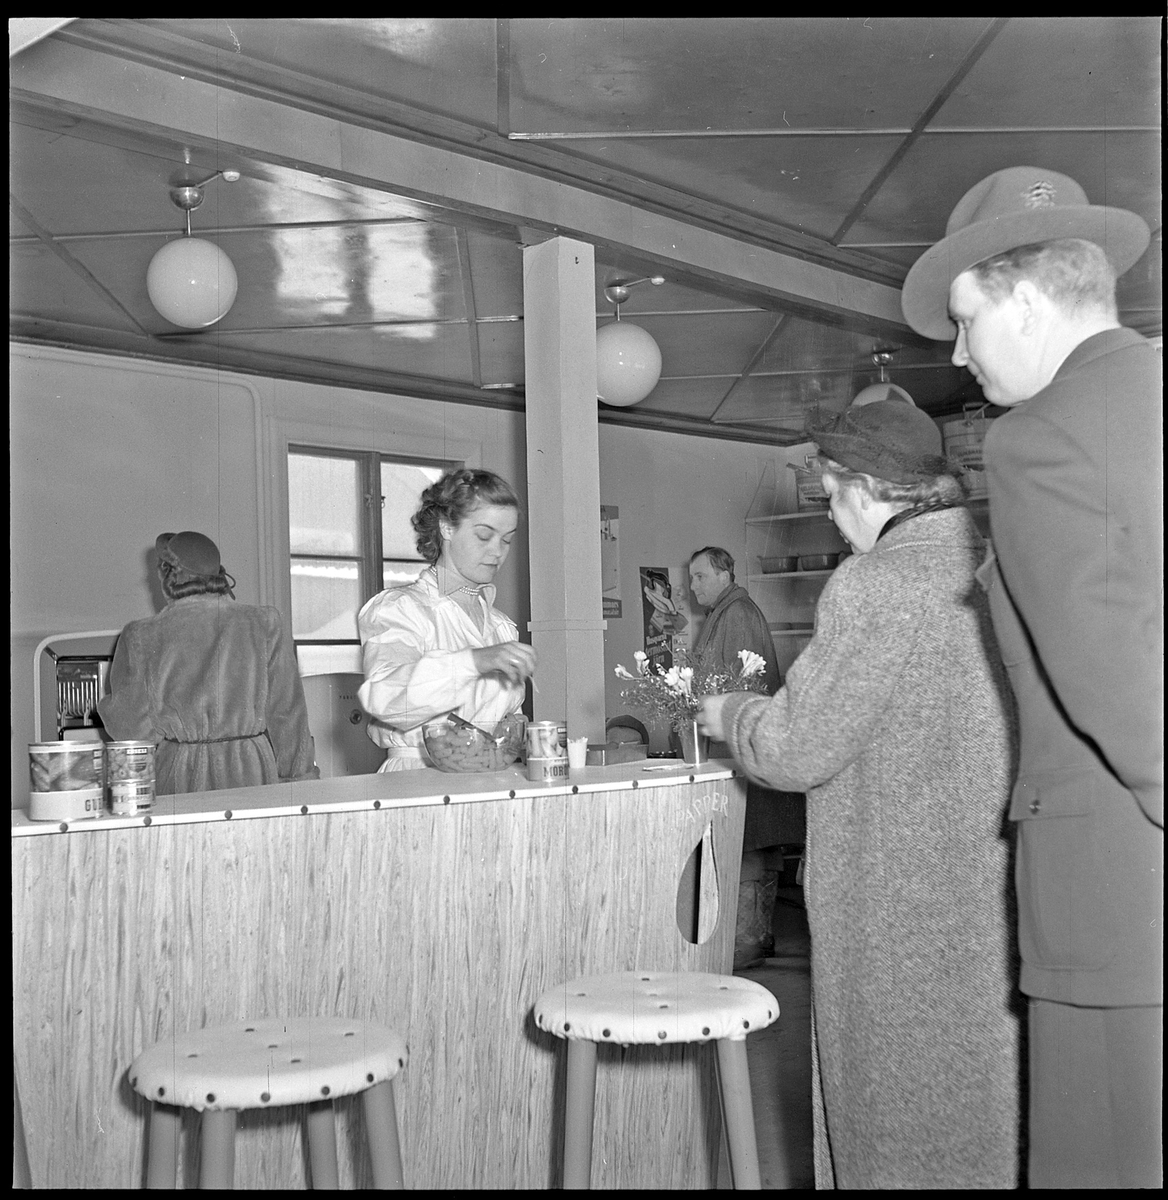 Aås Järnh. har utställning, Kungsgatan 33. 18 mars 1951